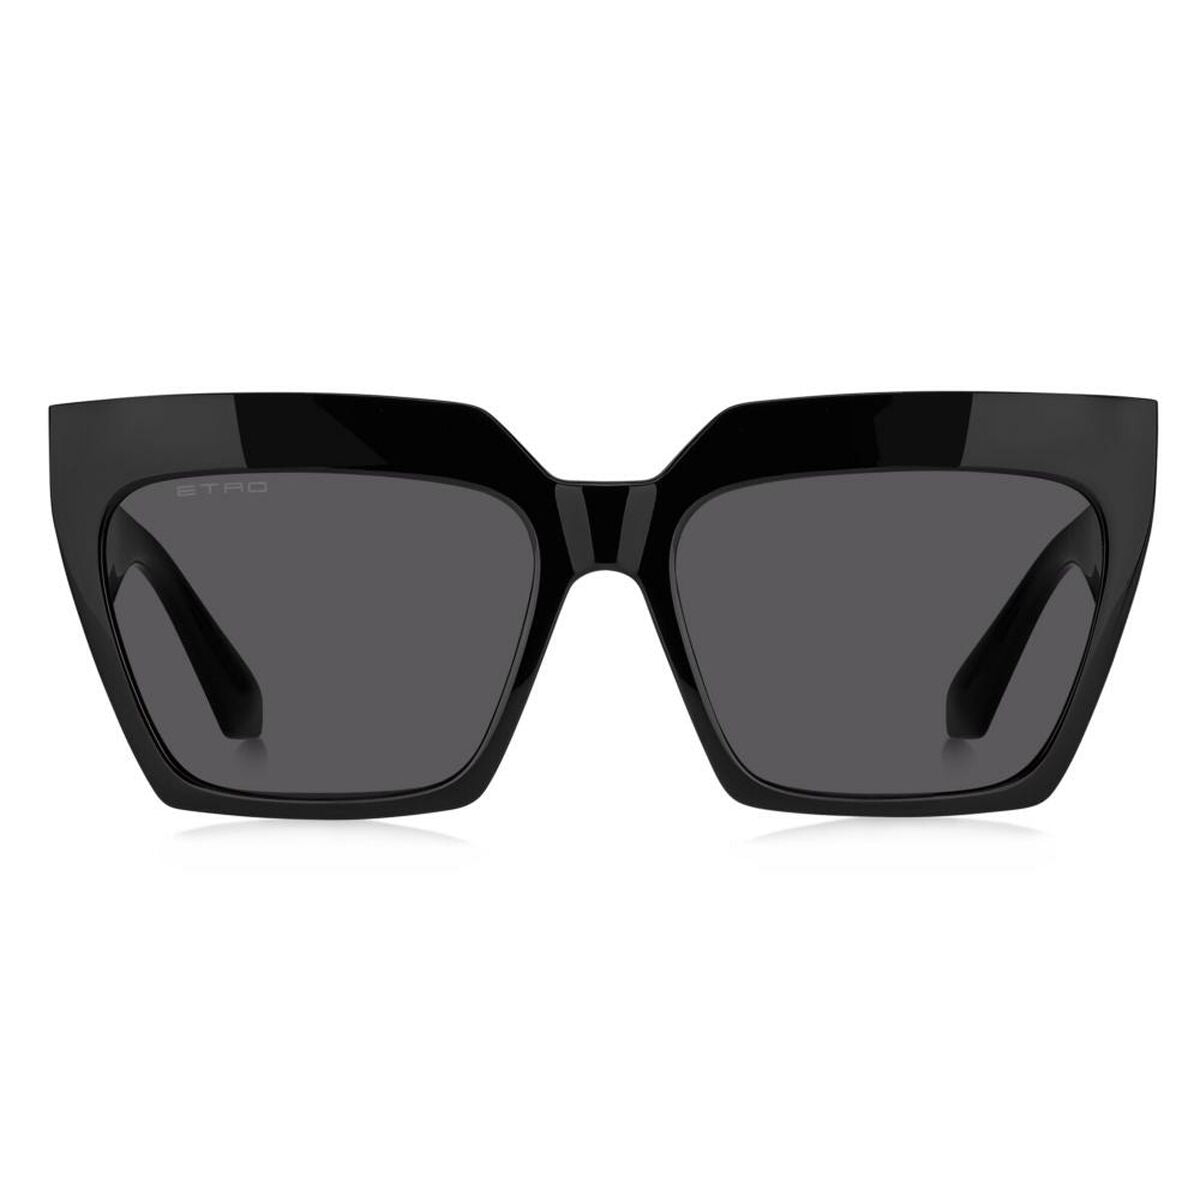 Kaufe Damensonnenbrille Etro ETRO 0001_S bei AWK Flagship um € 204.00